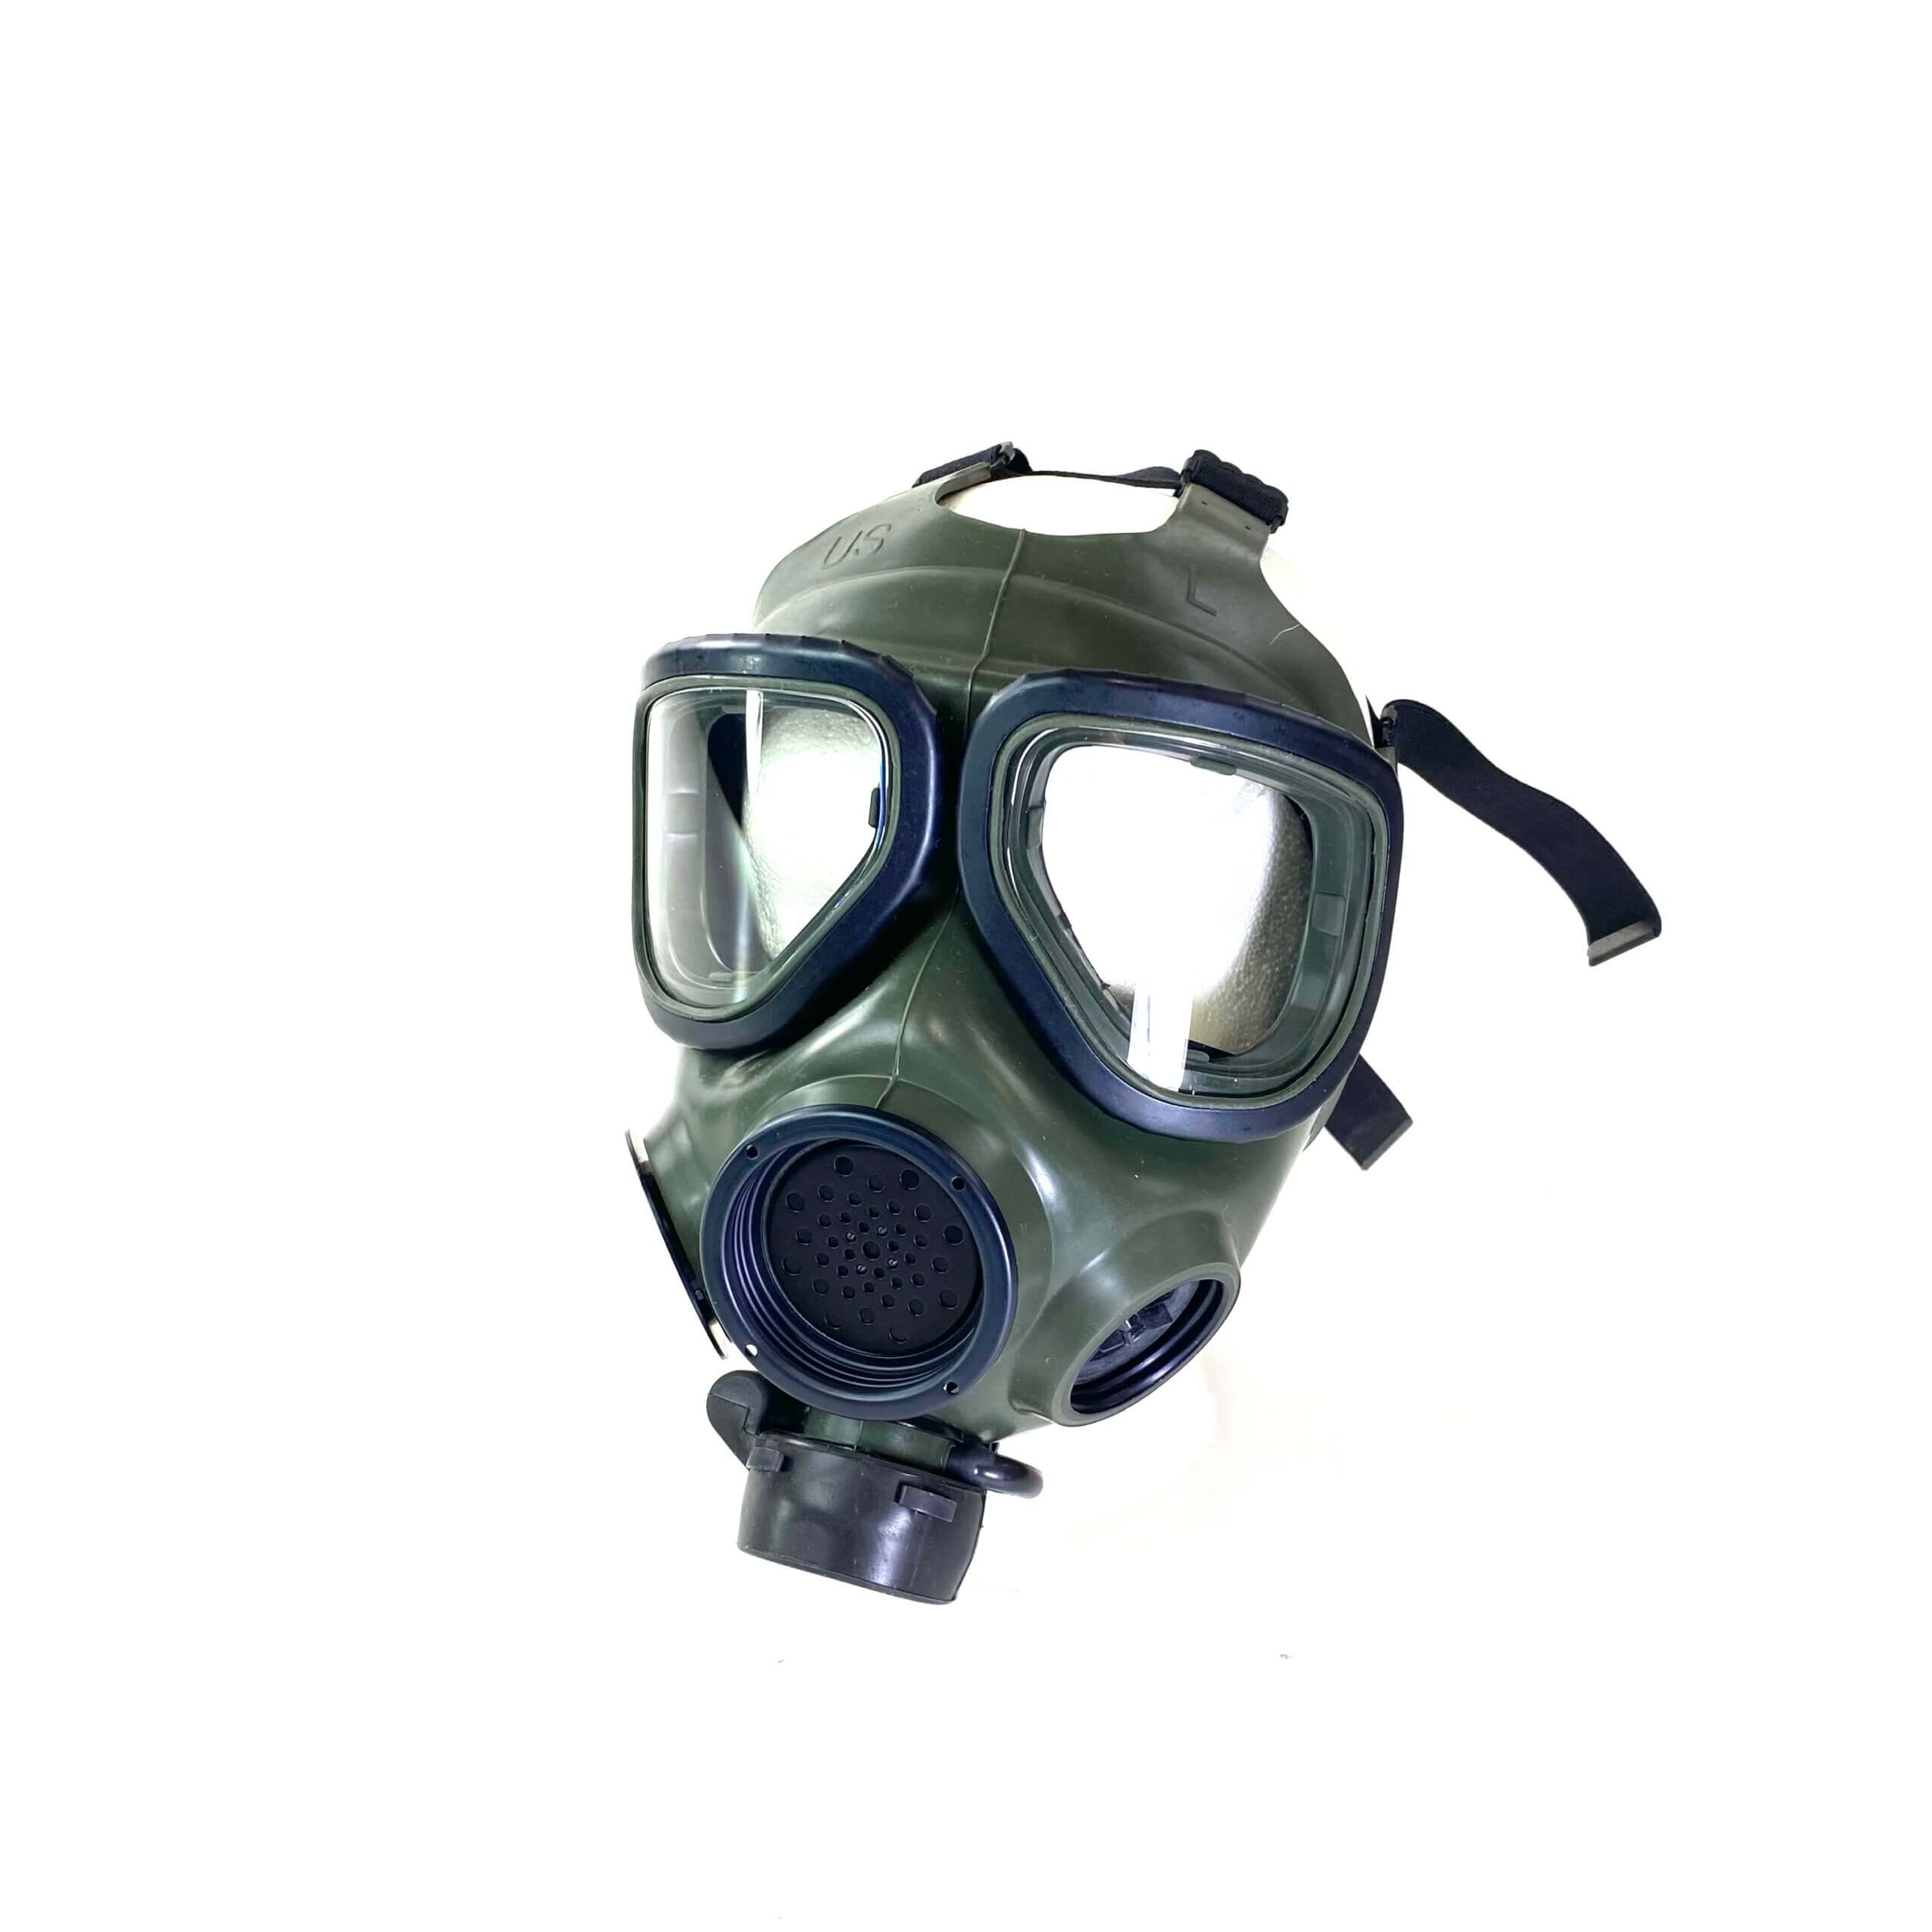 USGI M40 Gas Mask - Venture Surplus - Genuine Issue